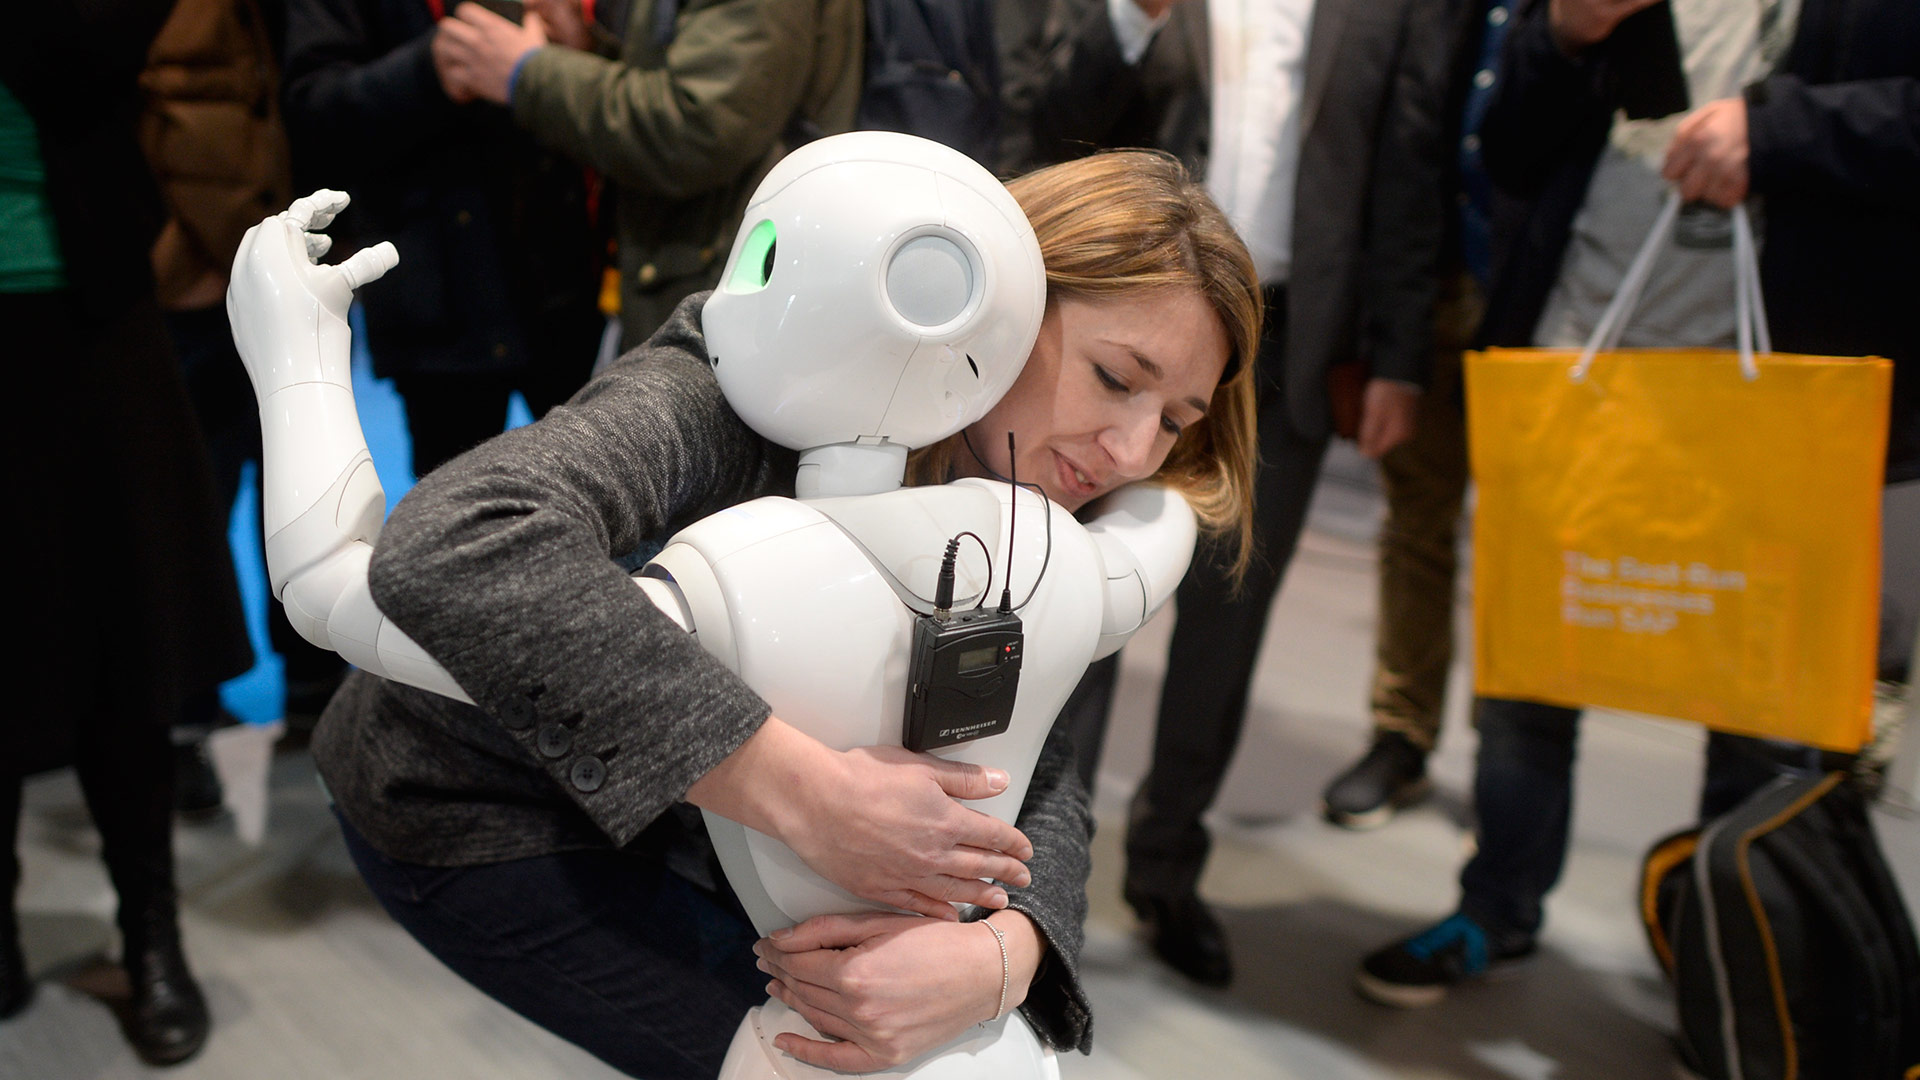 Crean un robot que detecta emociones mediante la interacción con personas